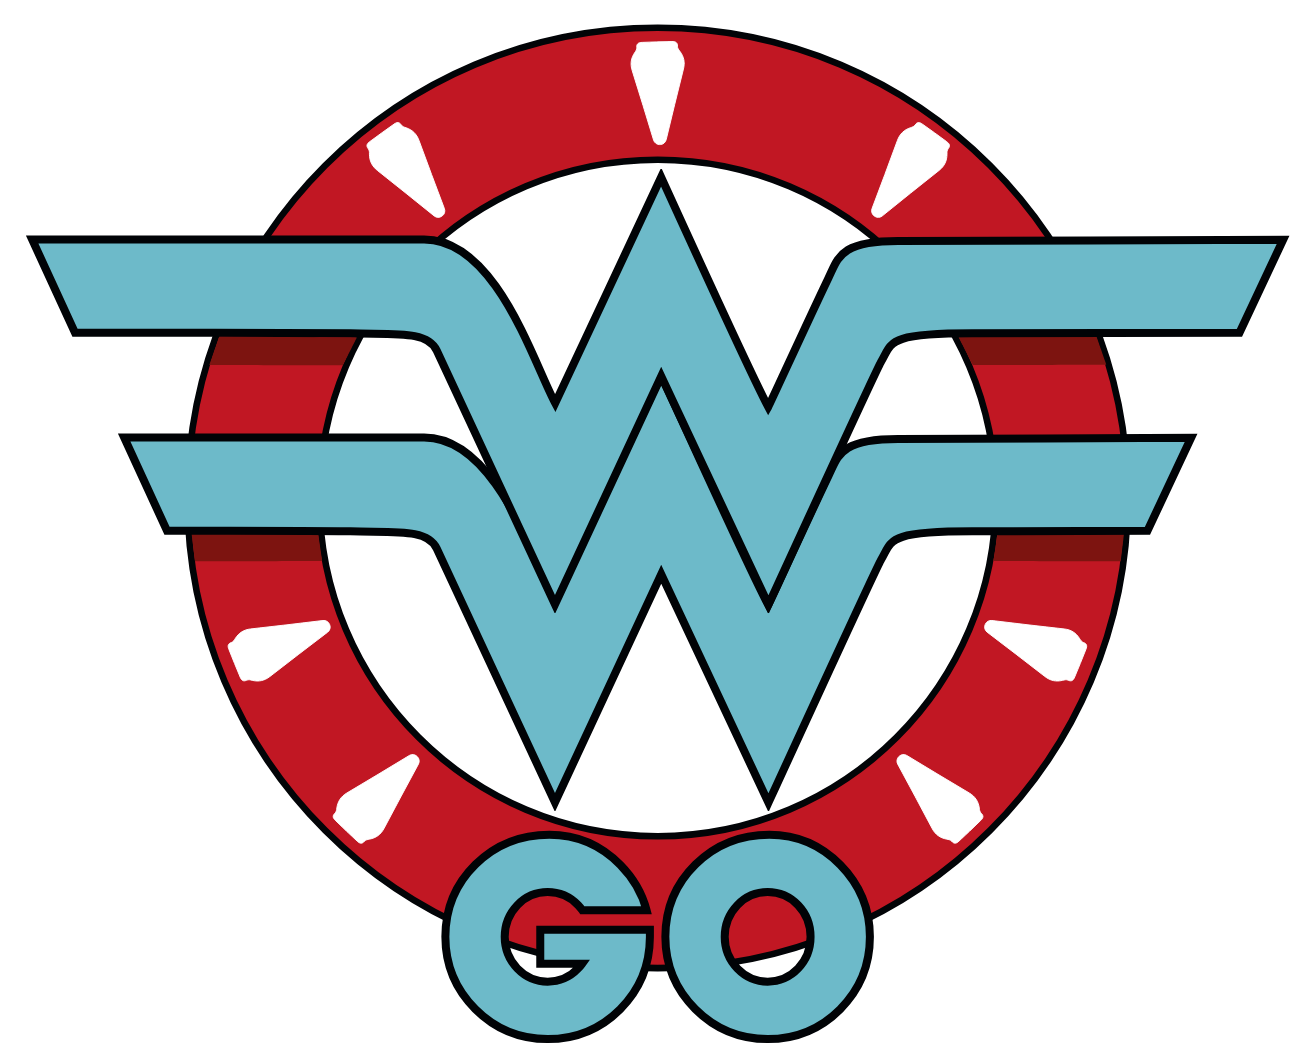 Logo do grupo Women Who Go Curitiba, que faz referência ao símbolo da mulher maravilha.